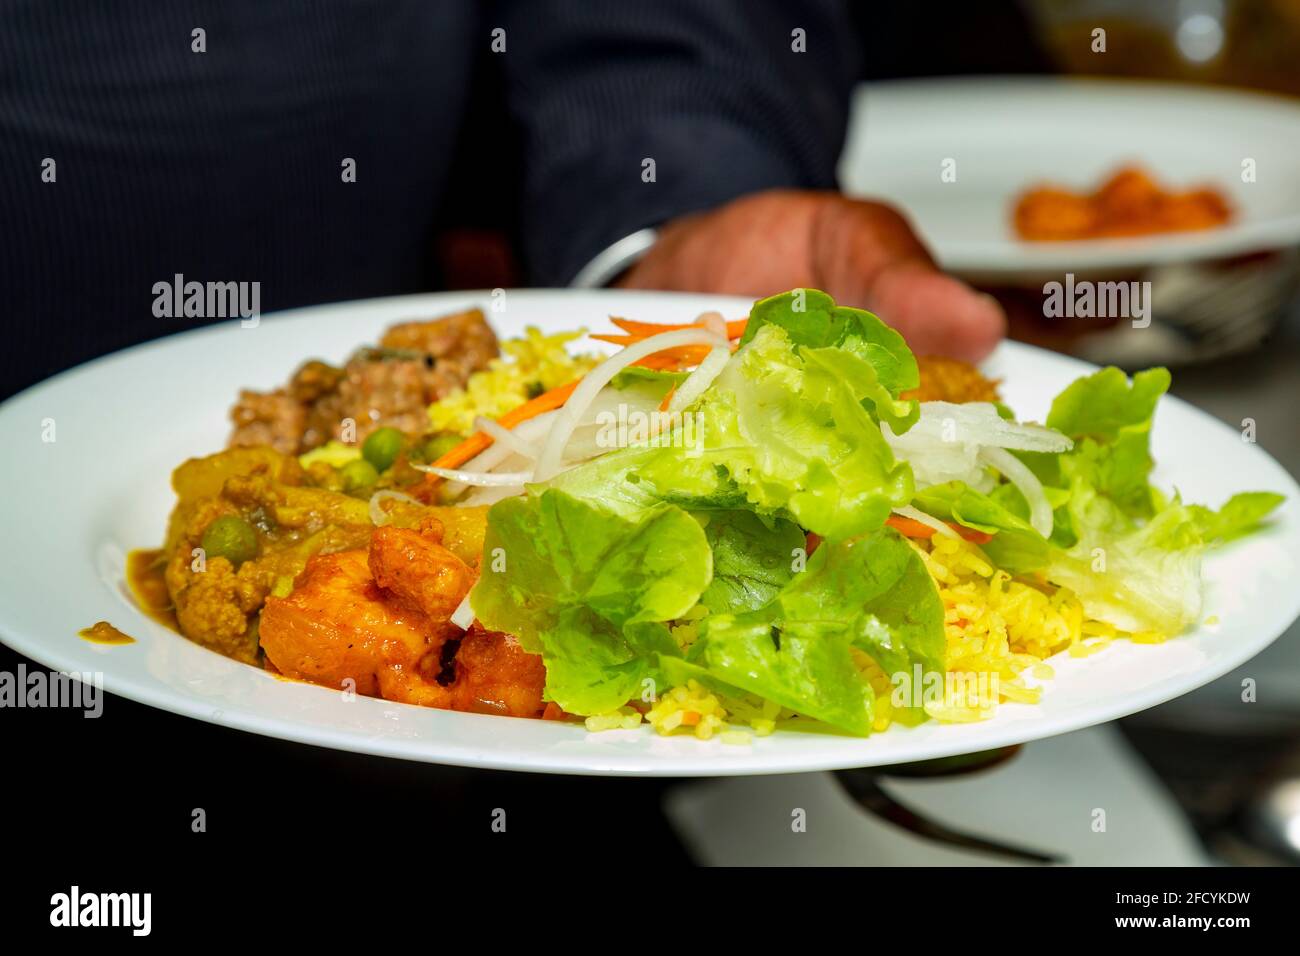 vegetarian food in a Hindu wedding reception Stock Photo